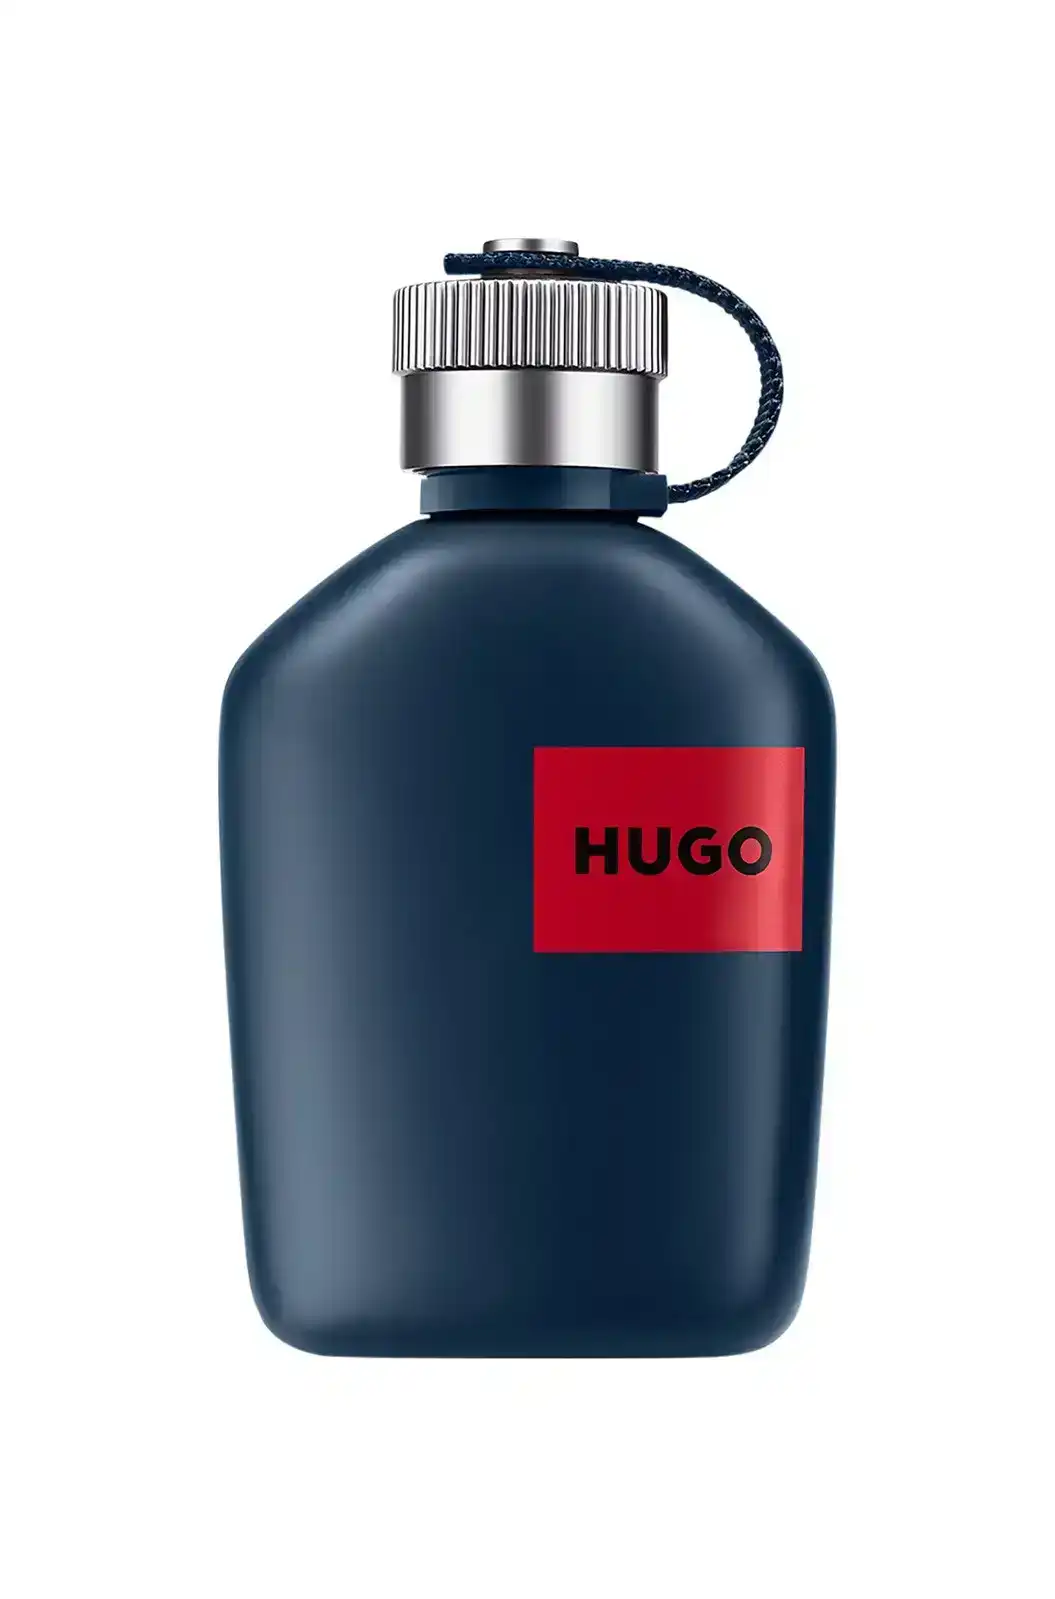 Hugo Boss Hugo Jeans EDT 75ml